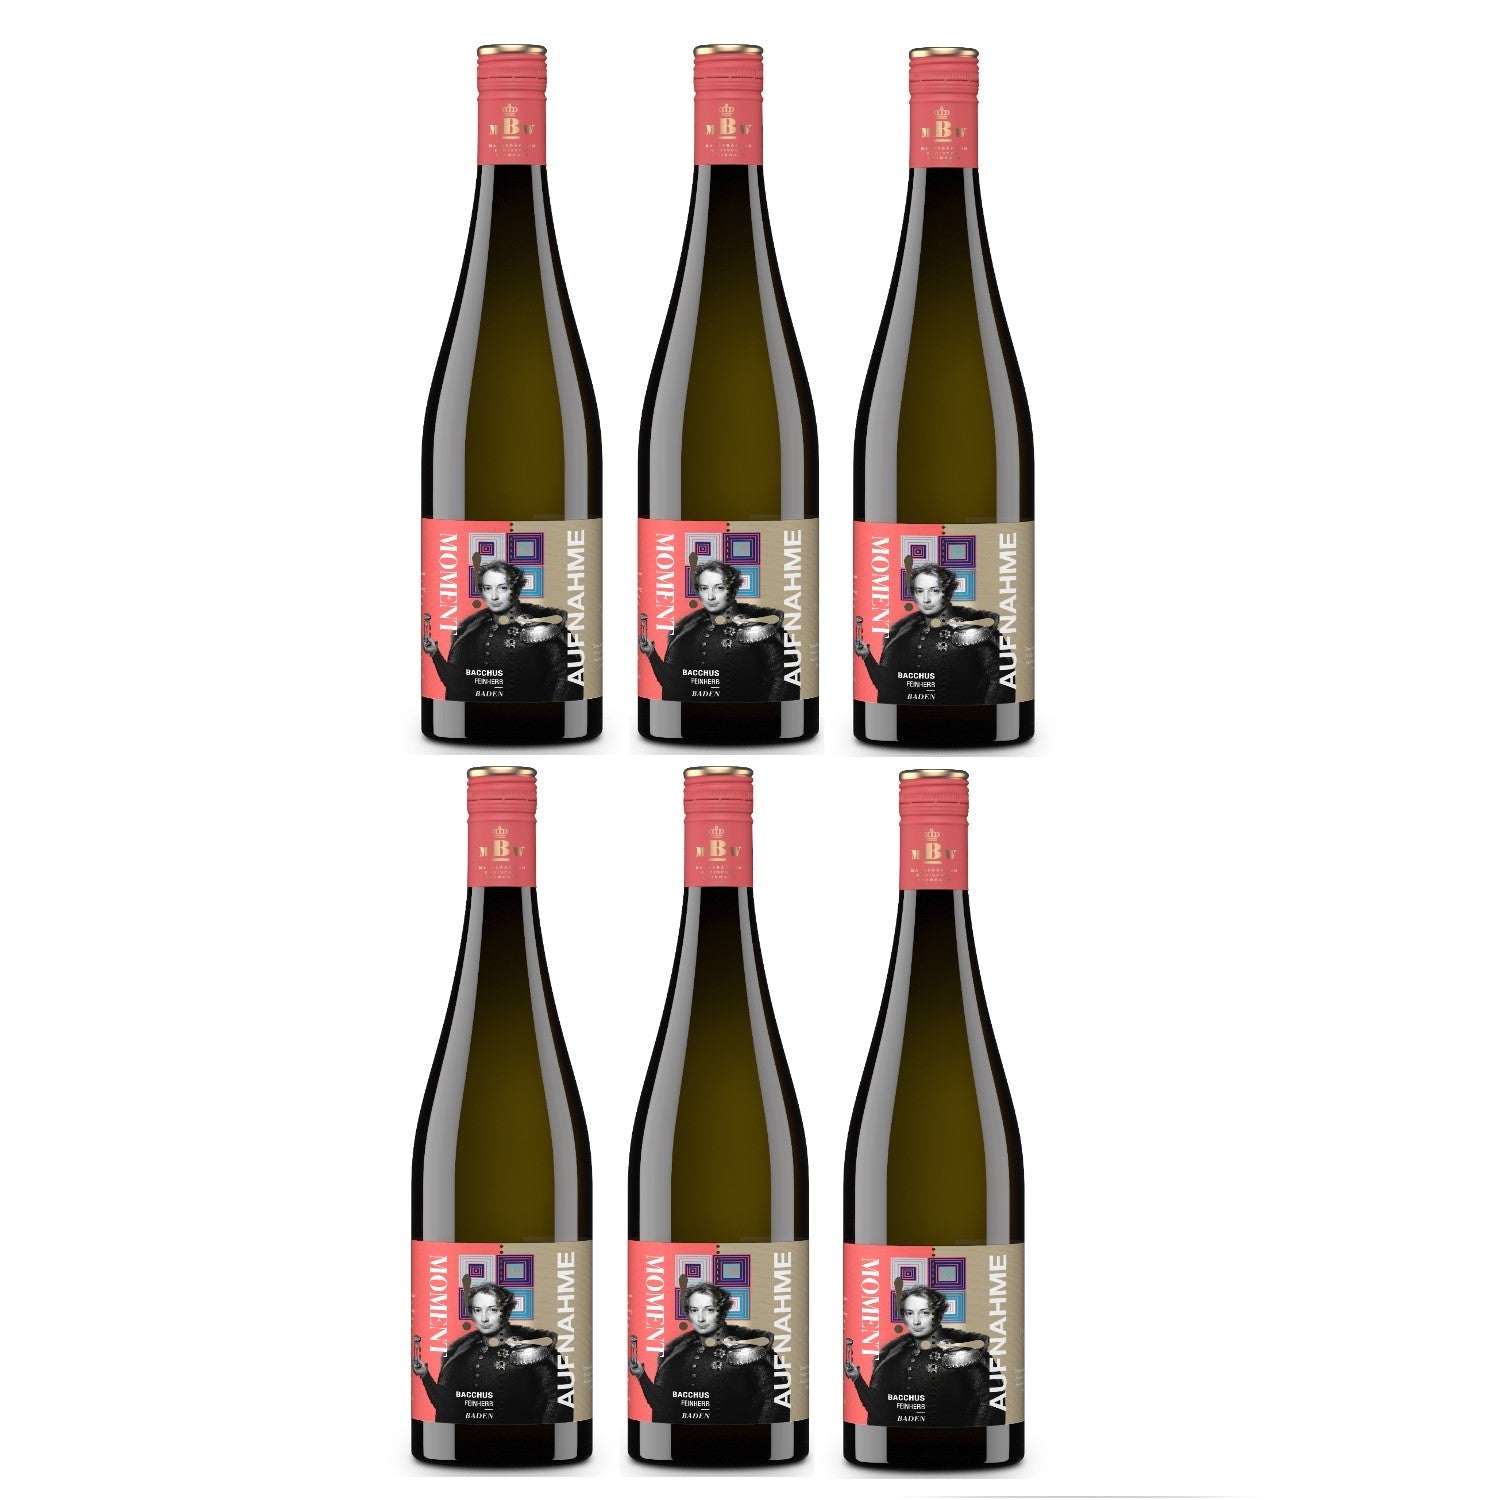 Markgraf von Baden Moment-Aufnahme Bacchus Weißwein Wein feinherb Deutschland (6 x 0.75l) - Versanel -